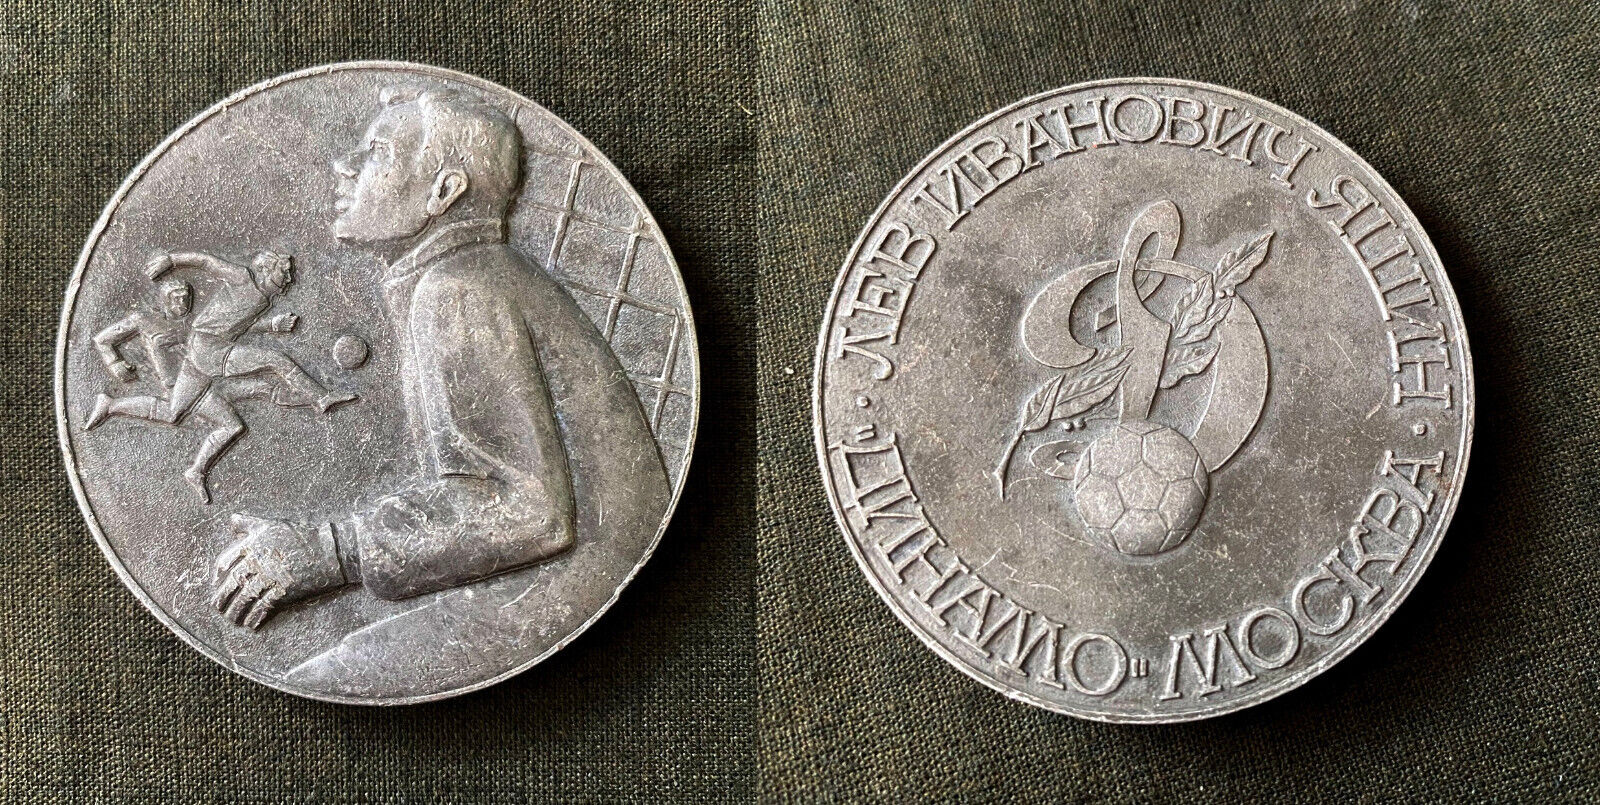 Rare Vintage Old Table Medal Soviet Sport Football Socker USSR Dynamo Lev Yashin